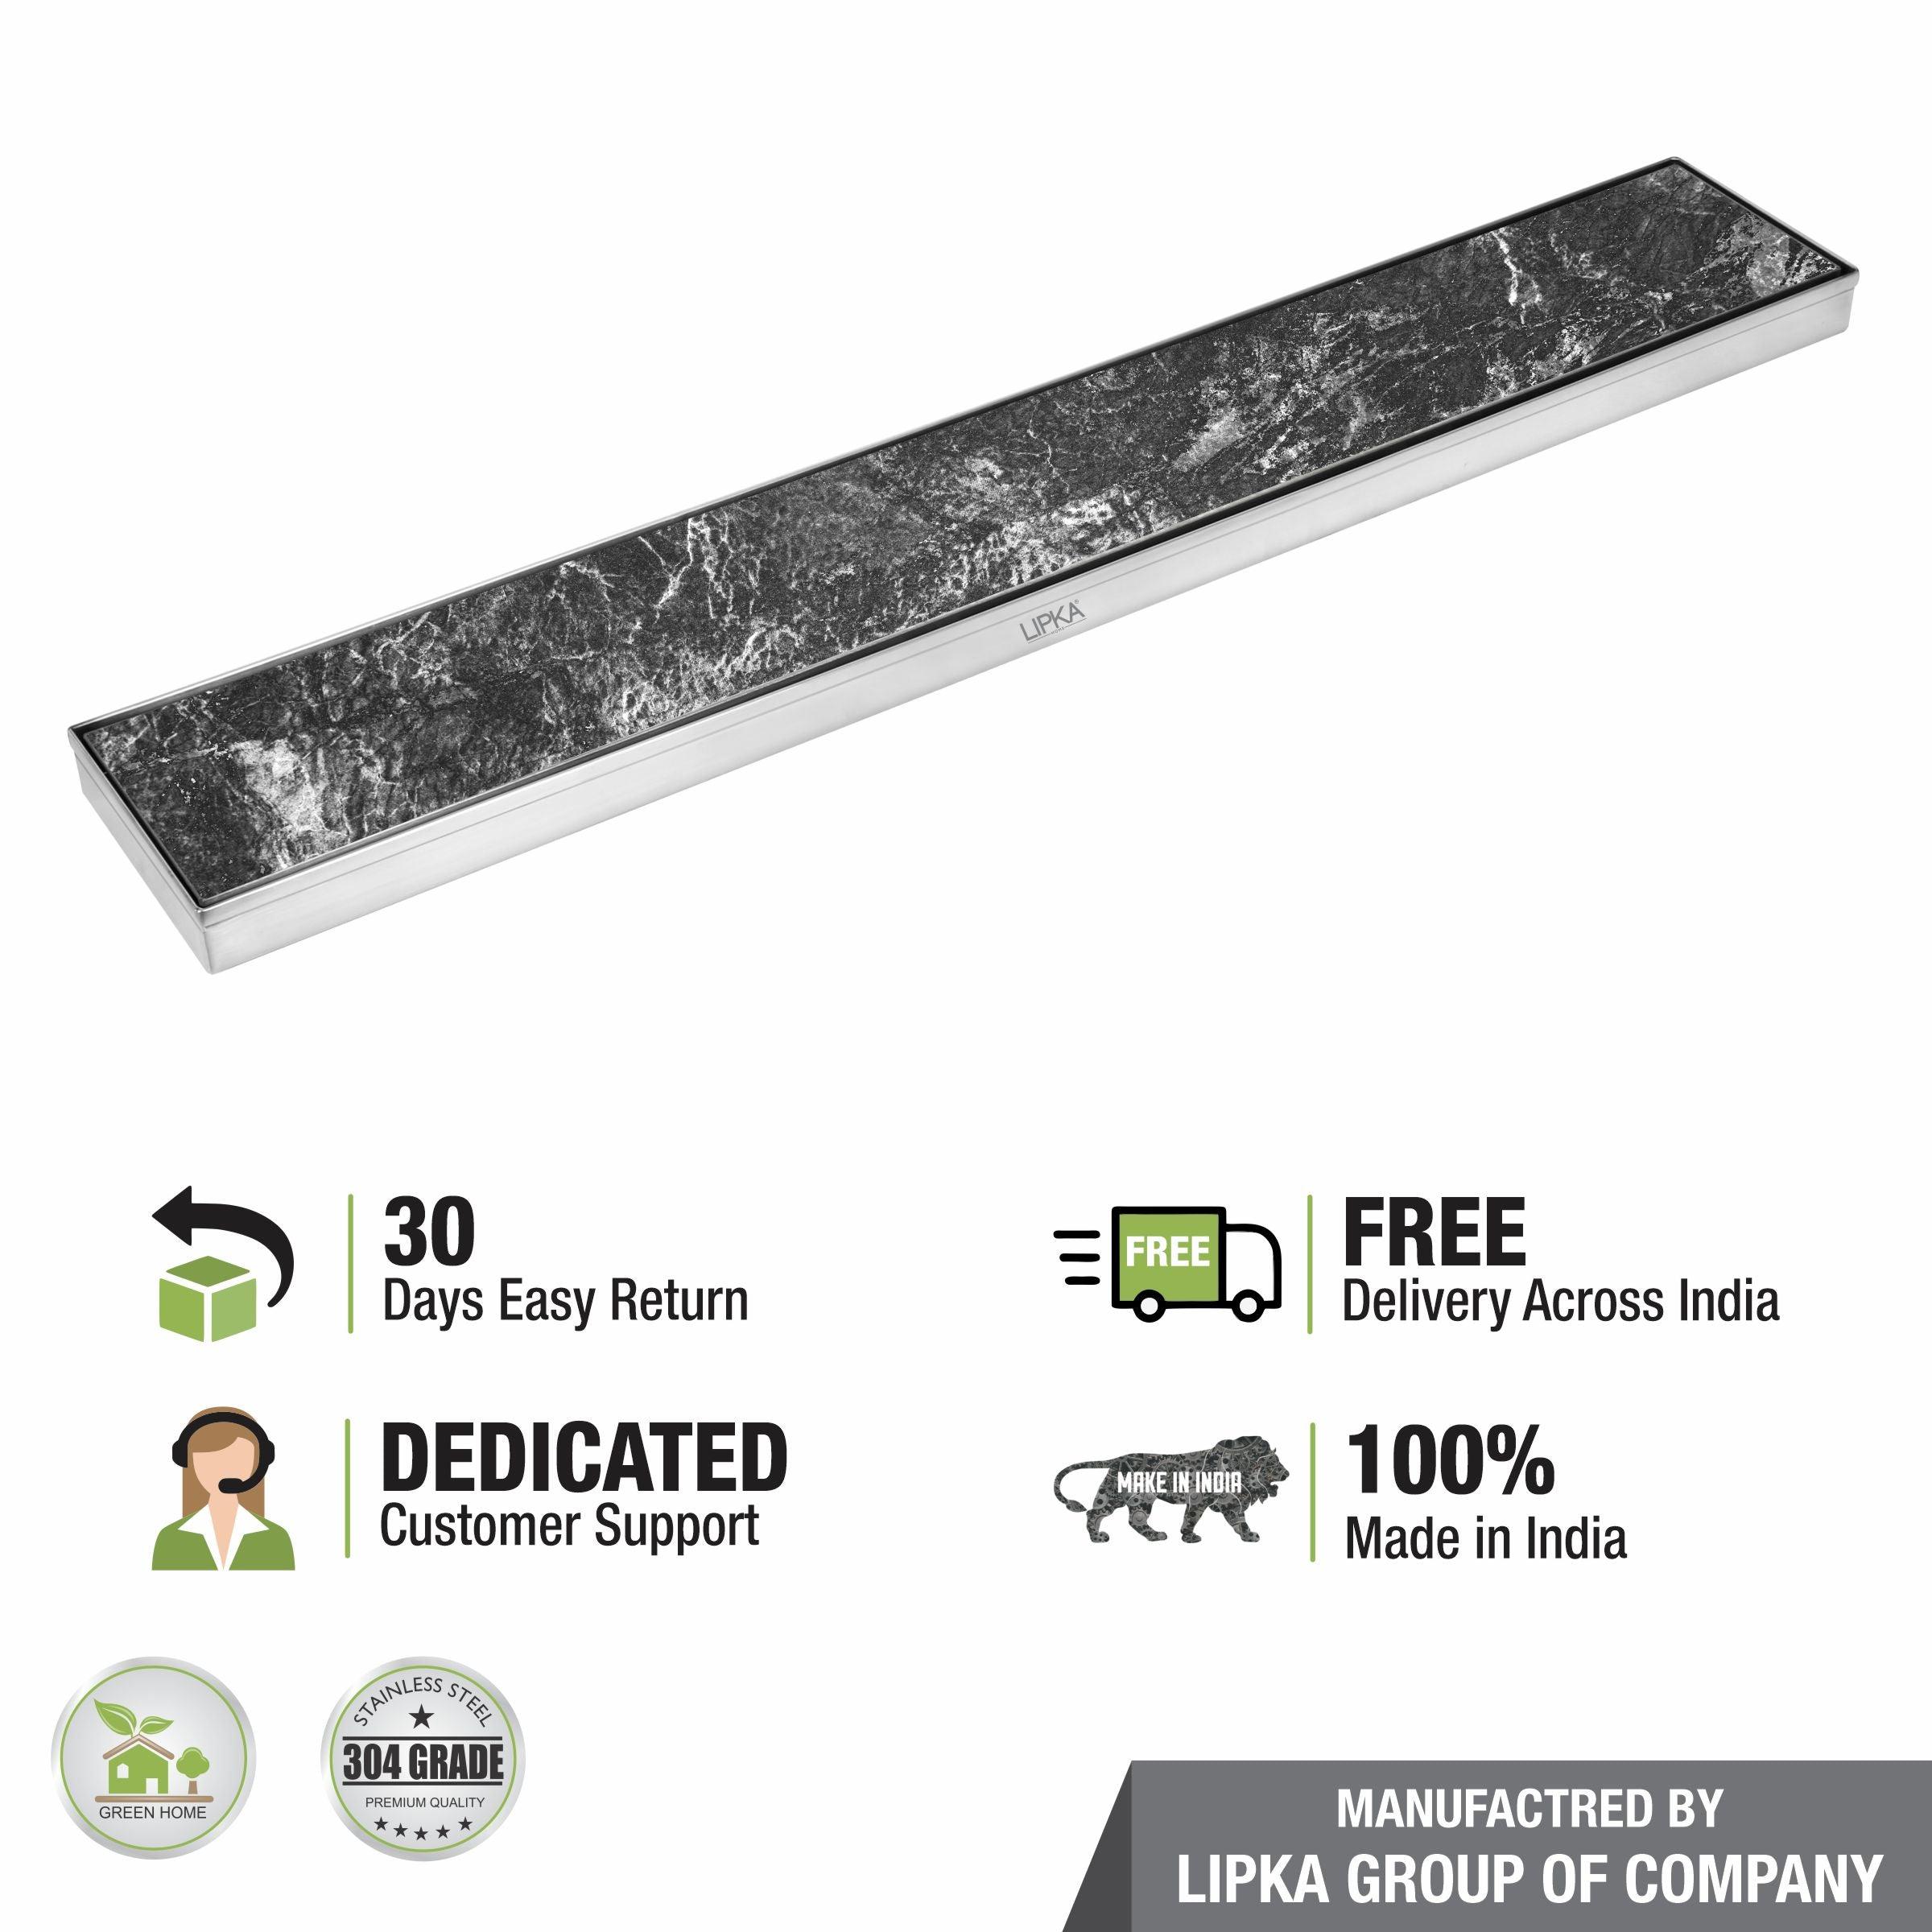 Tile Insert Shower Drain Channel (48 x 4 Inches) - LIPKA - Lipka Home